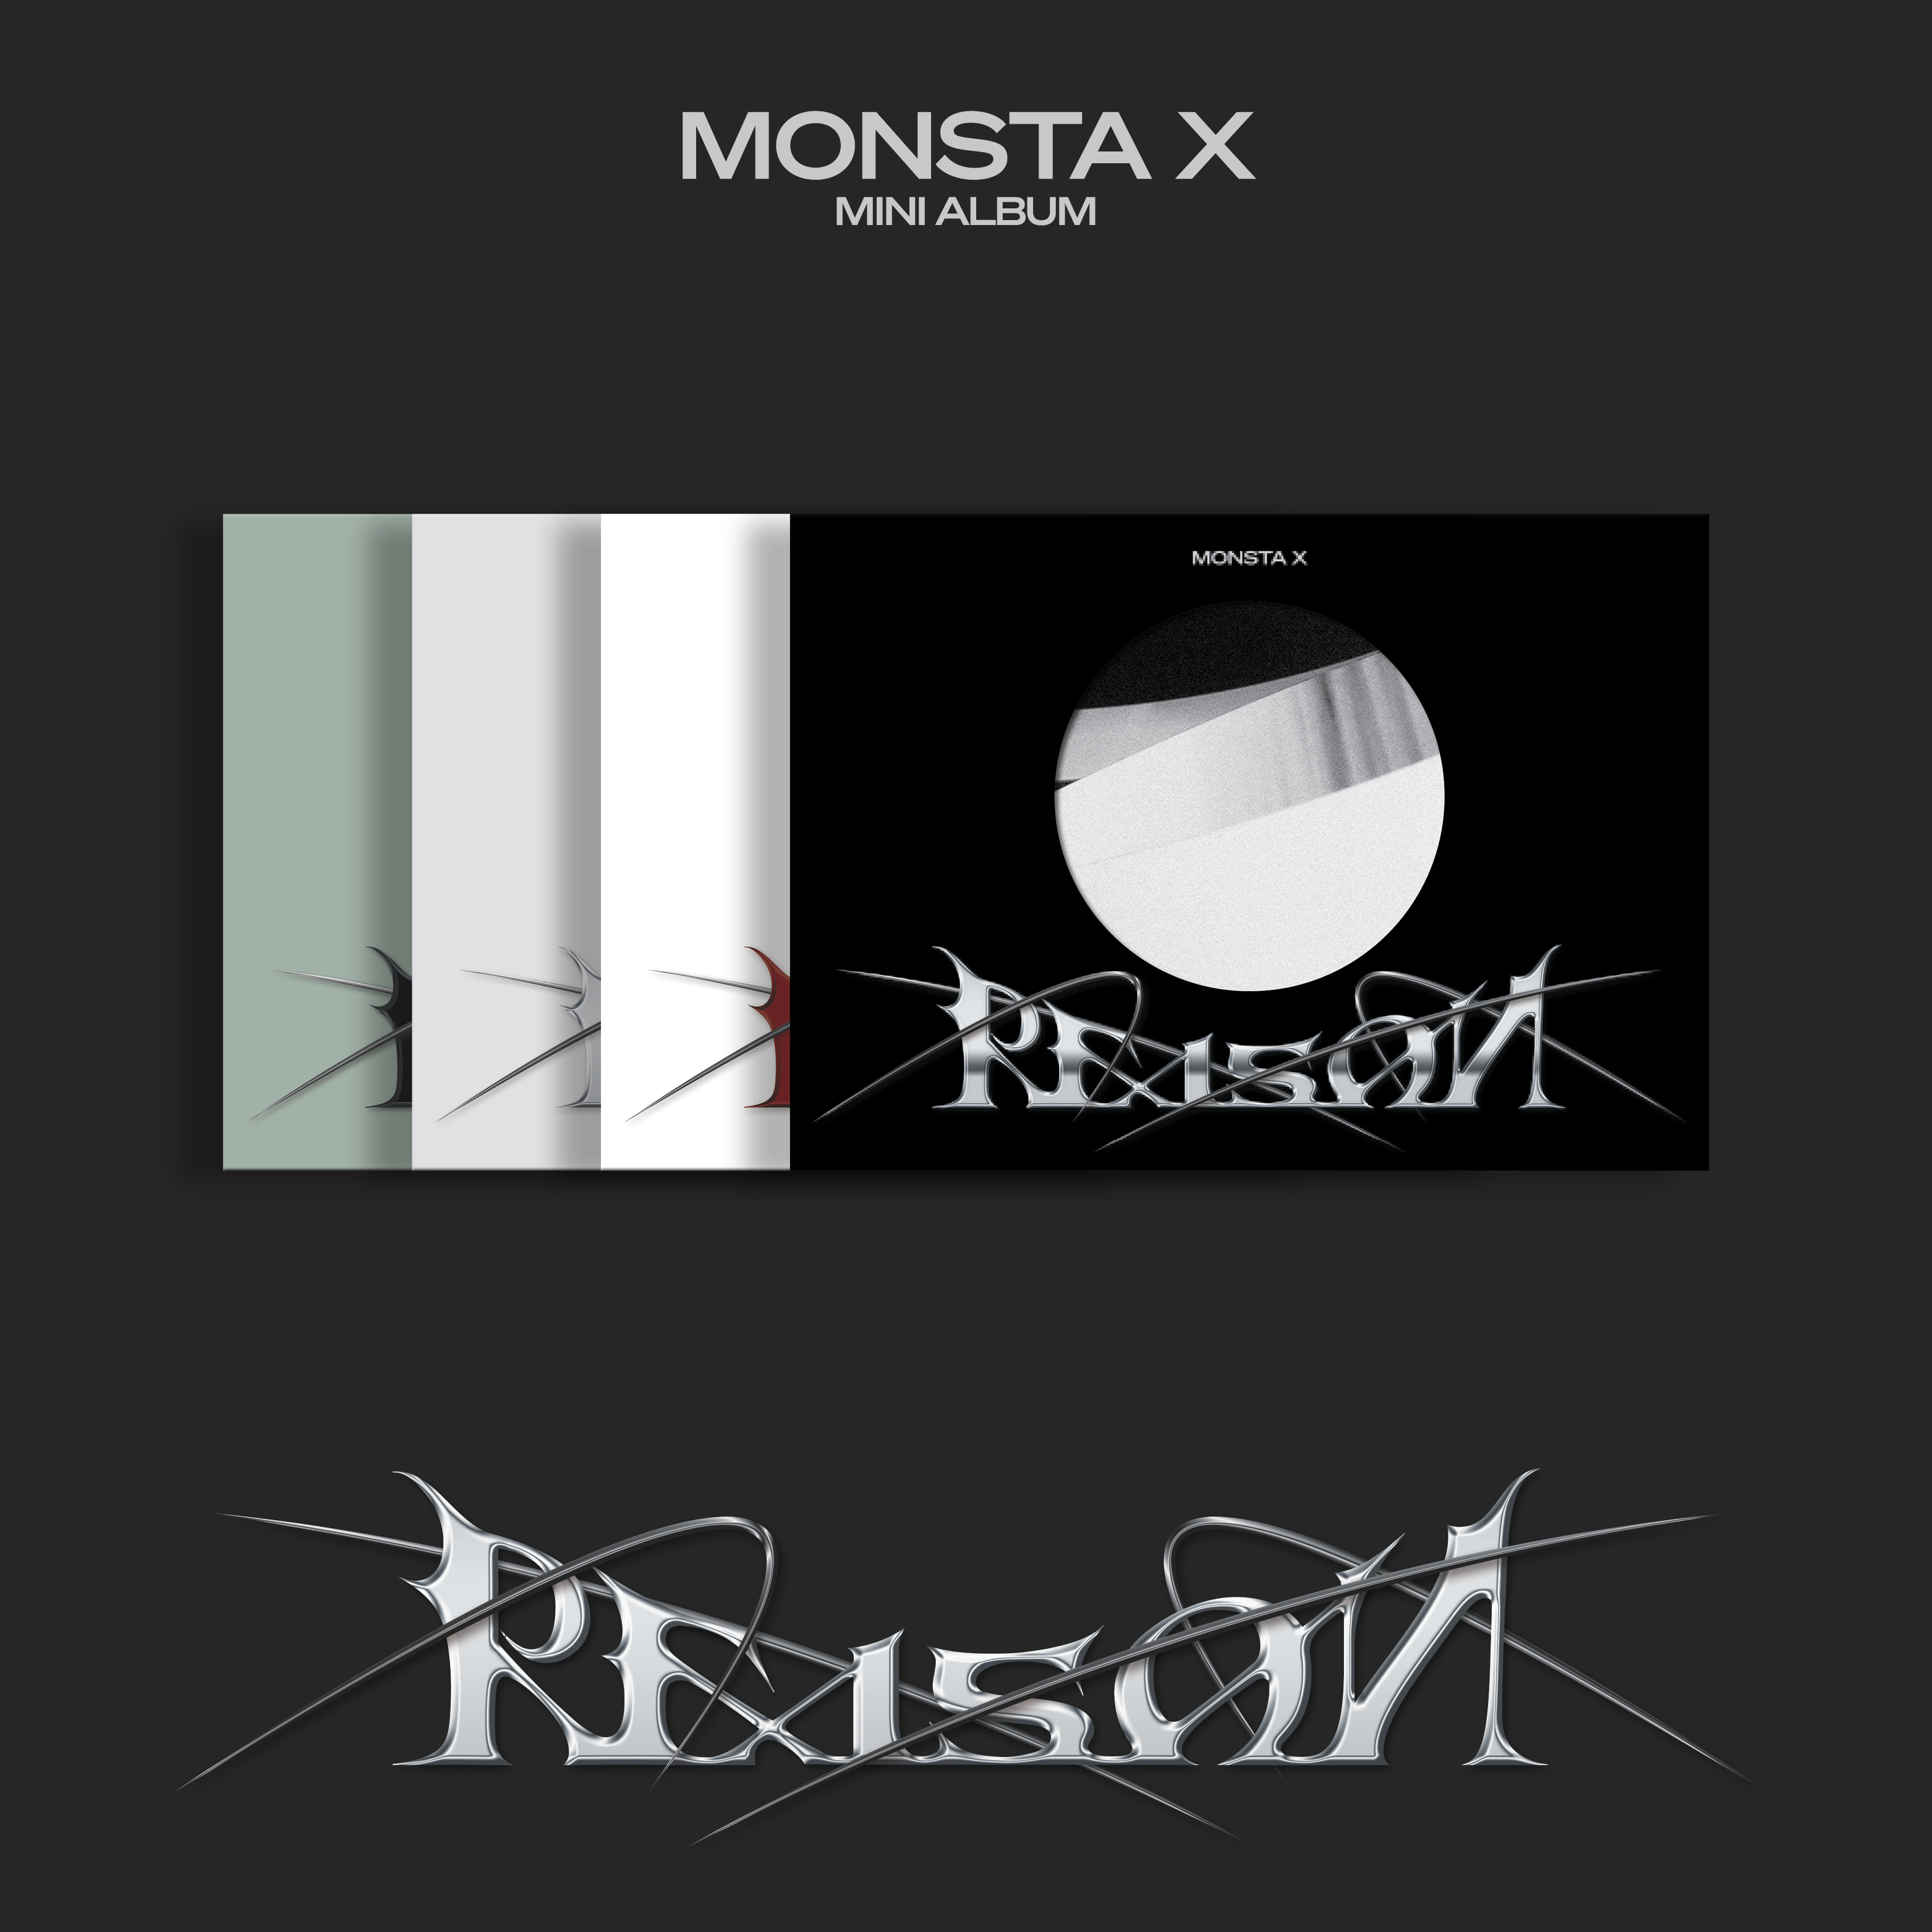 [全款 裸专] [4CD 套装] MONSTA X - 迷你12辑 [REASON] (VER.1 + VER.2 + VER.3 + VER.4) (再版) _Trespass_MonstaX资讯博